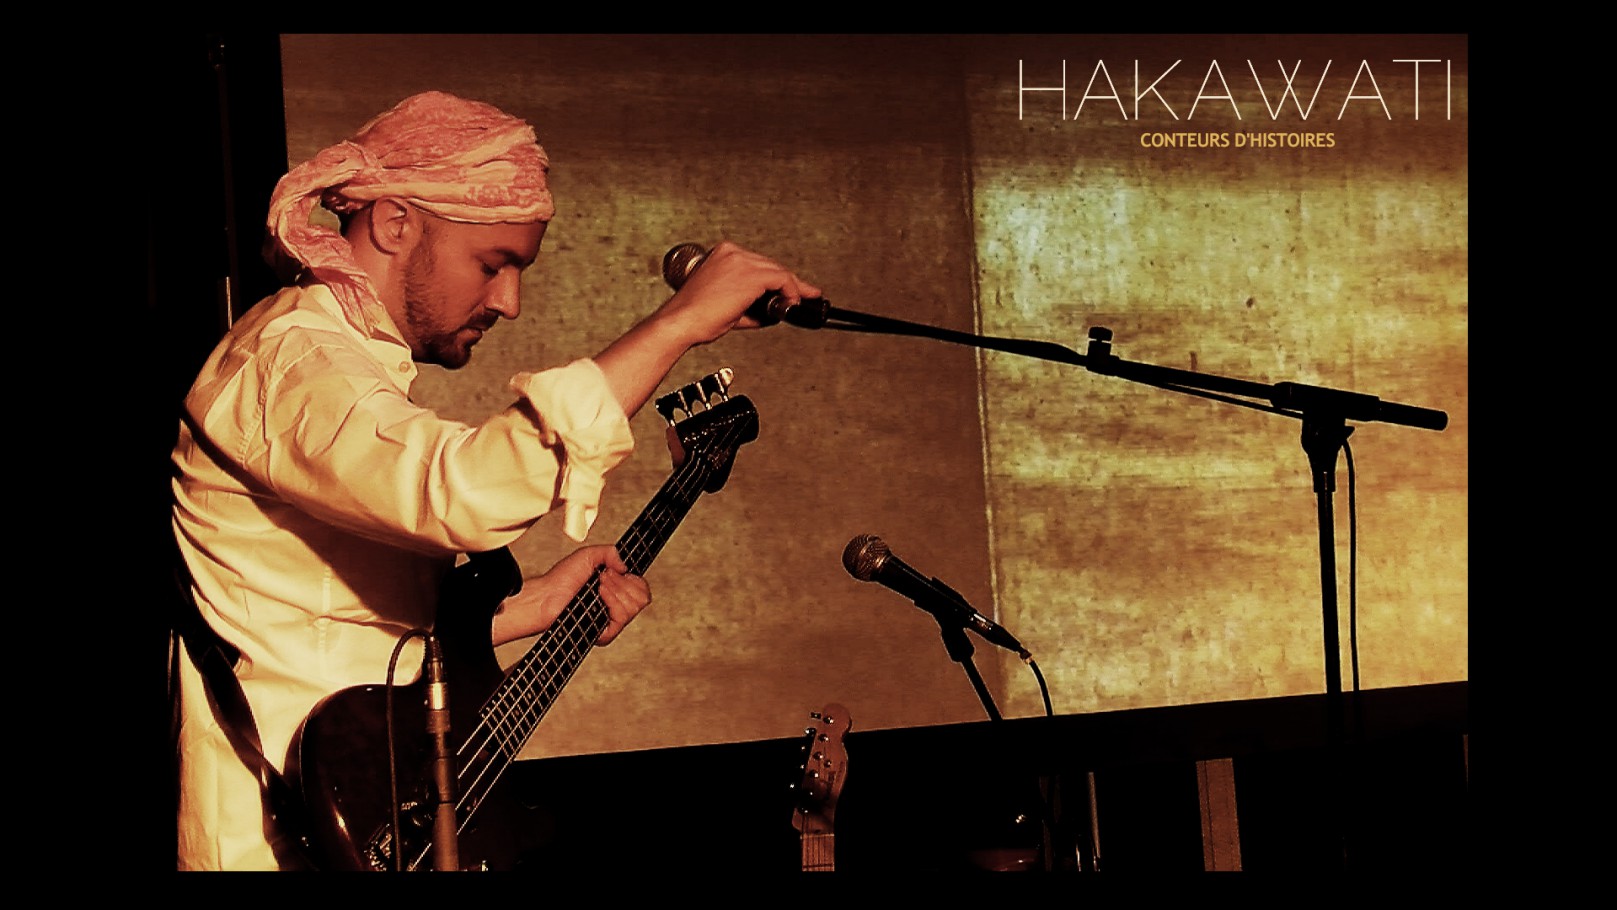 Performance Hakawati